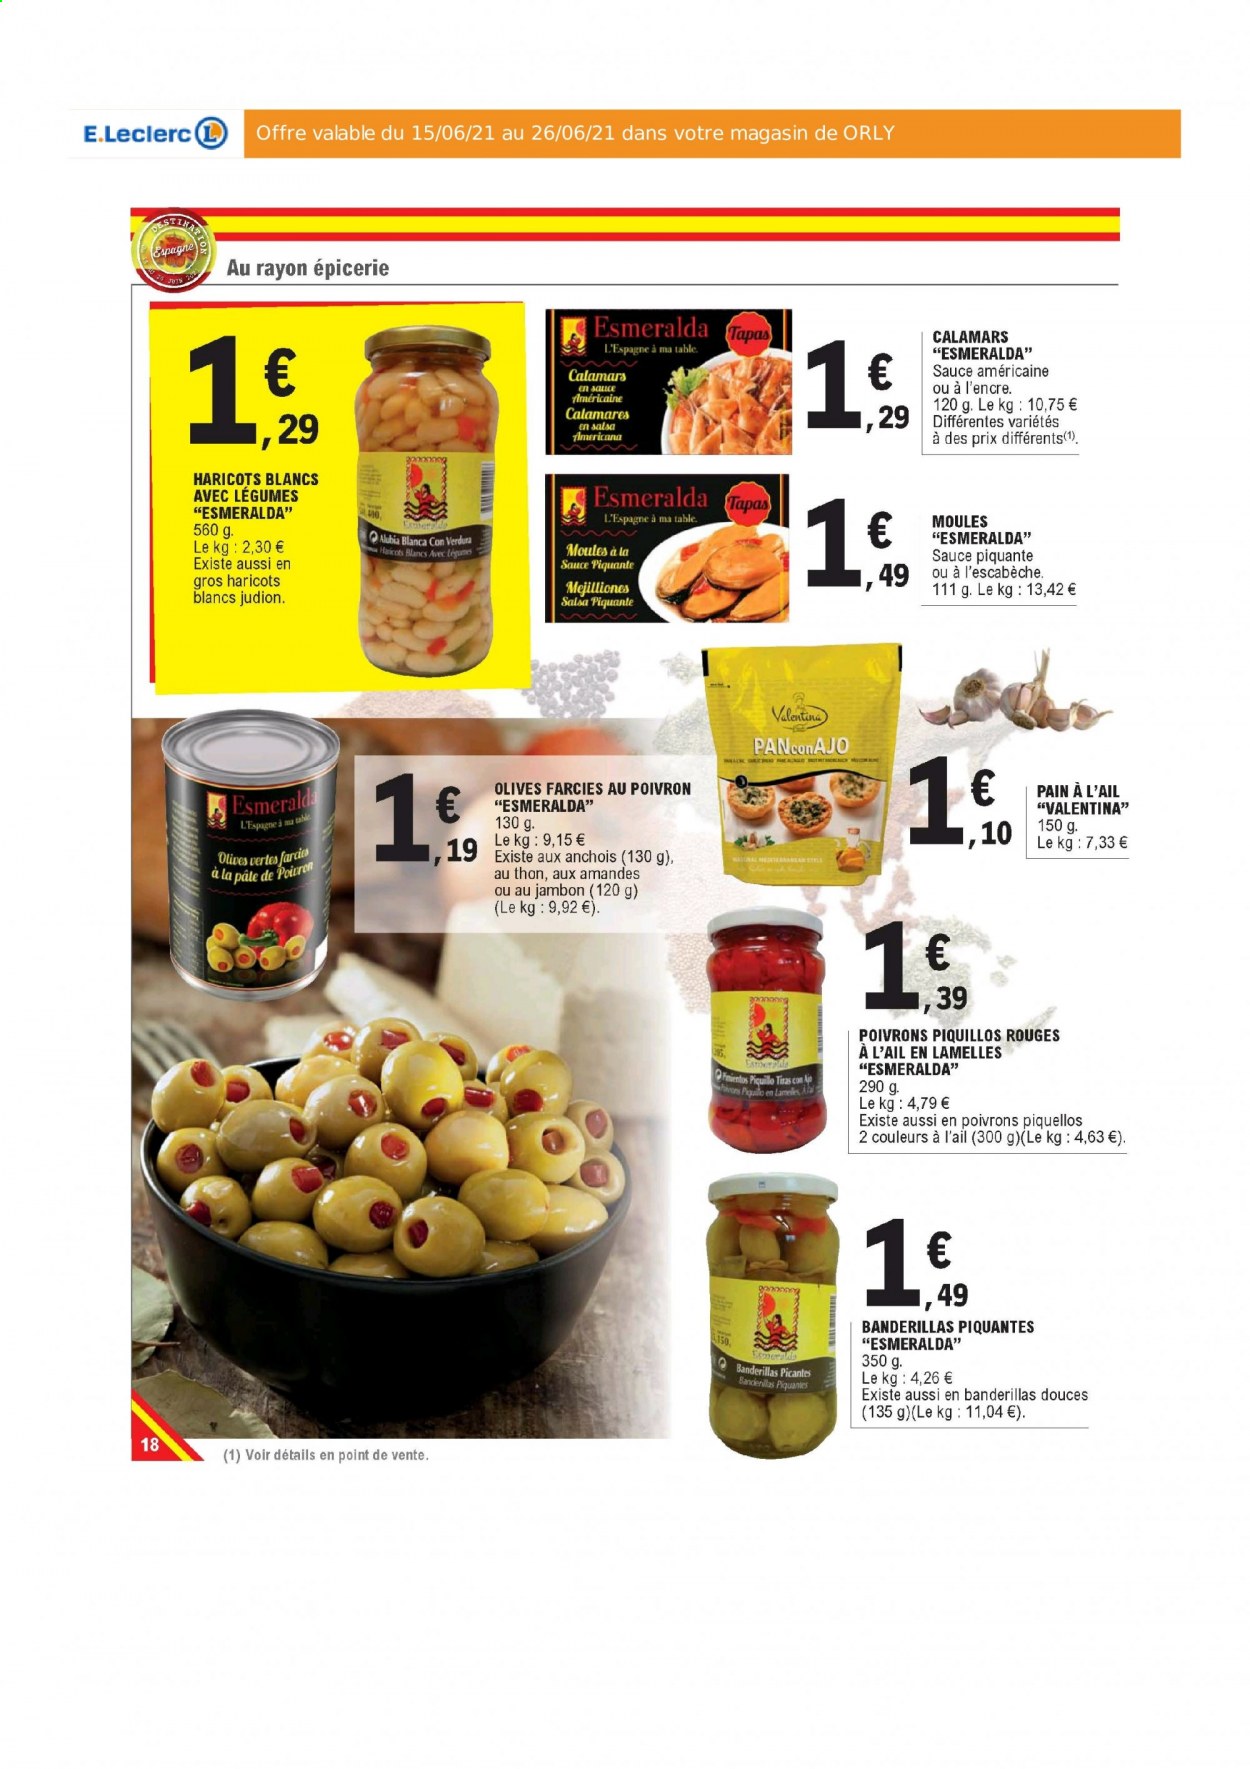 thumbnail - Catalogue E.Leclerc - 15/06/2021 - 26/06/2021 - Produits soldés - table, pain, moules, calamars, tapas, haricots, olives vertes. Page 18.